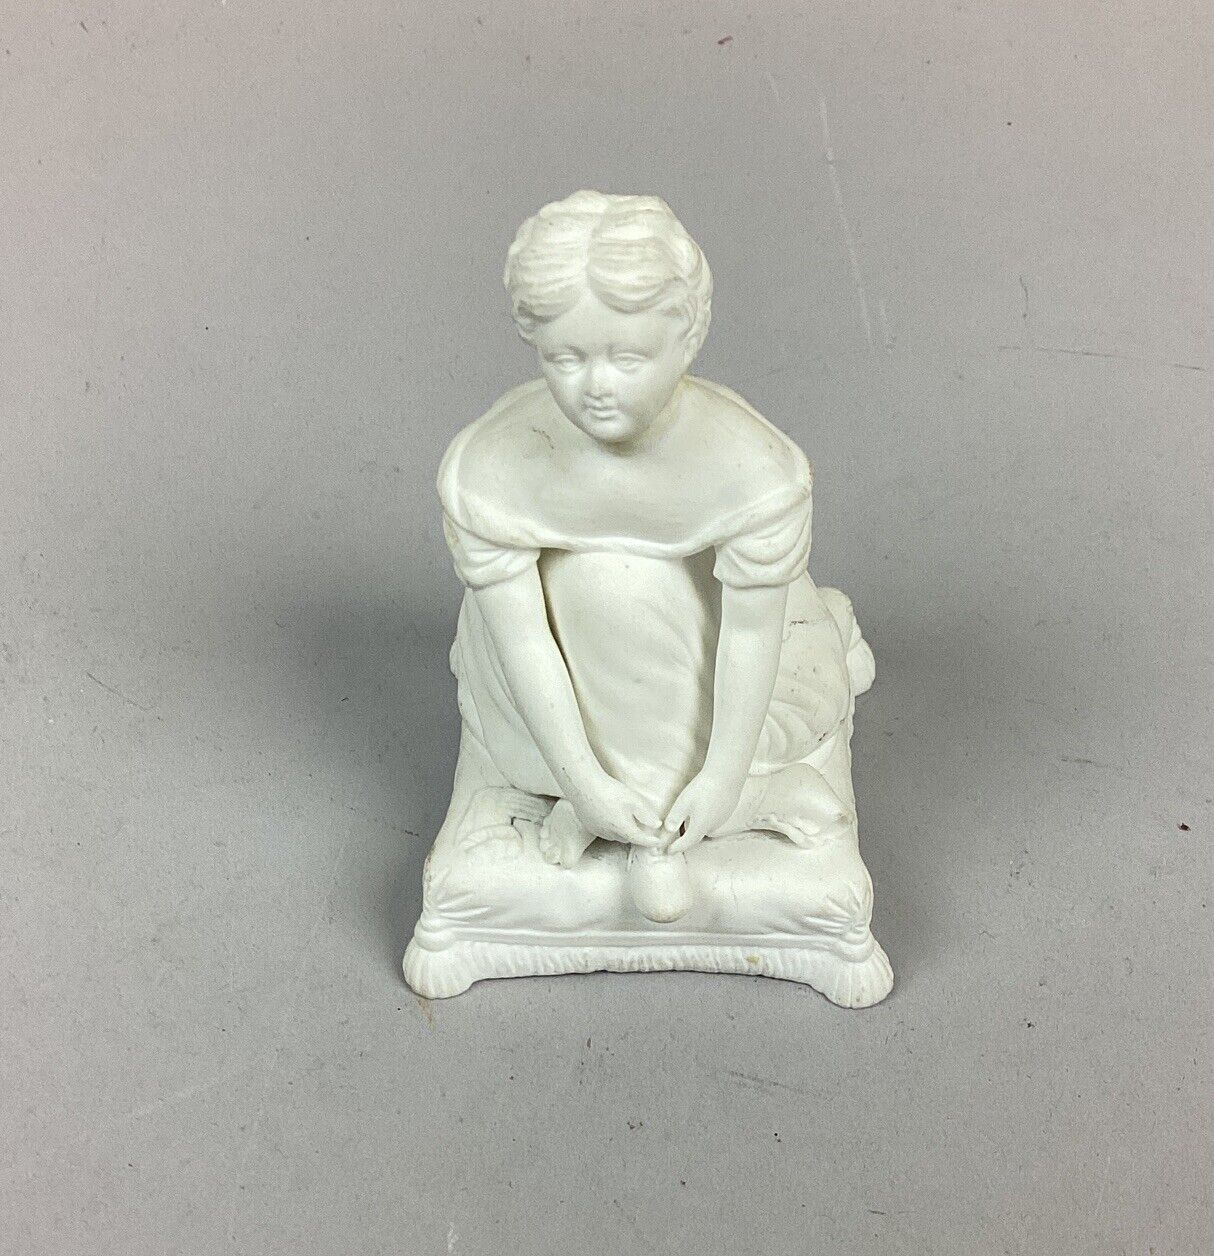 Antique Minton Bisque Porcelain Figurine - Mid 19th Century - 3.5”H